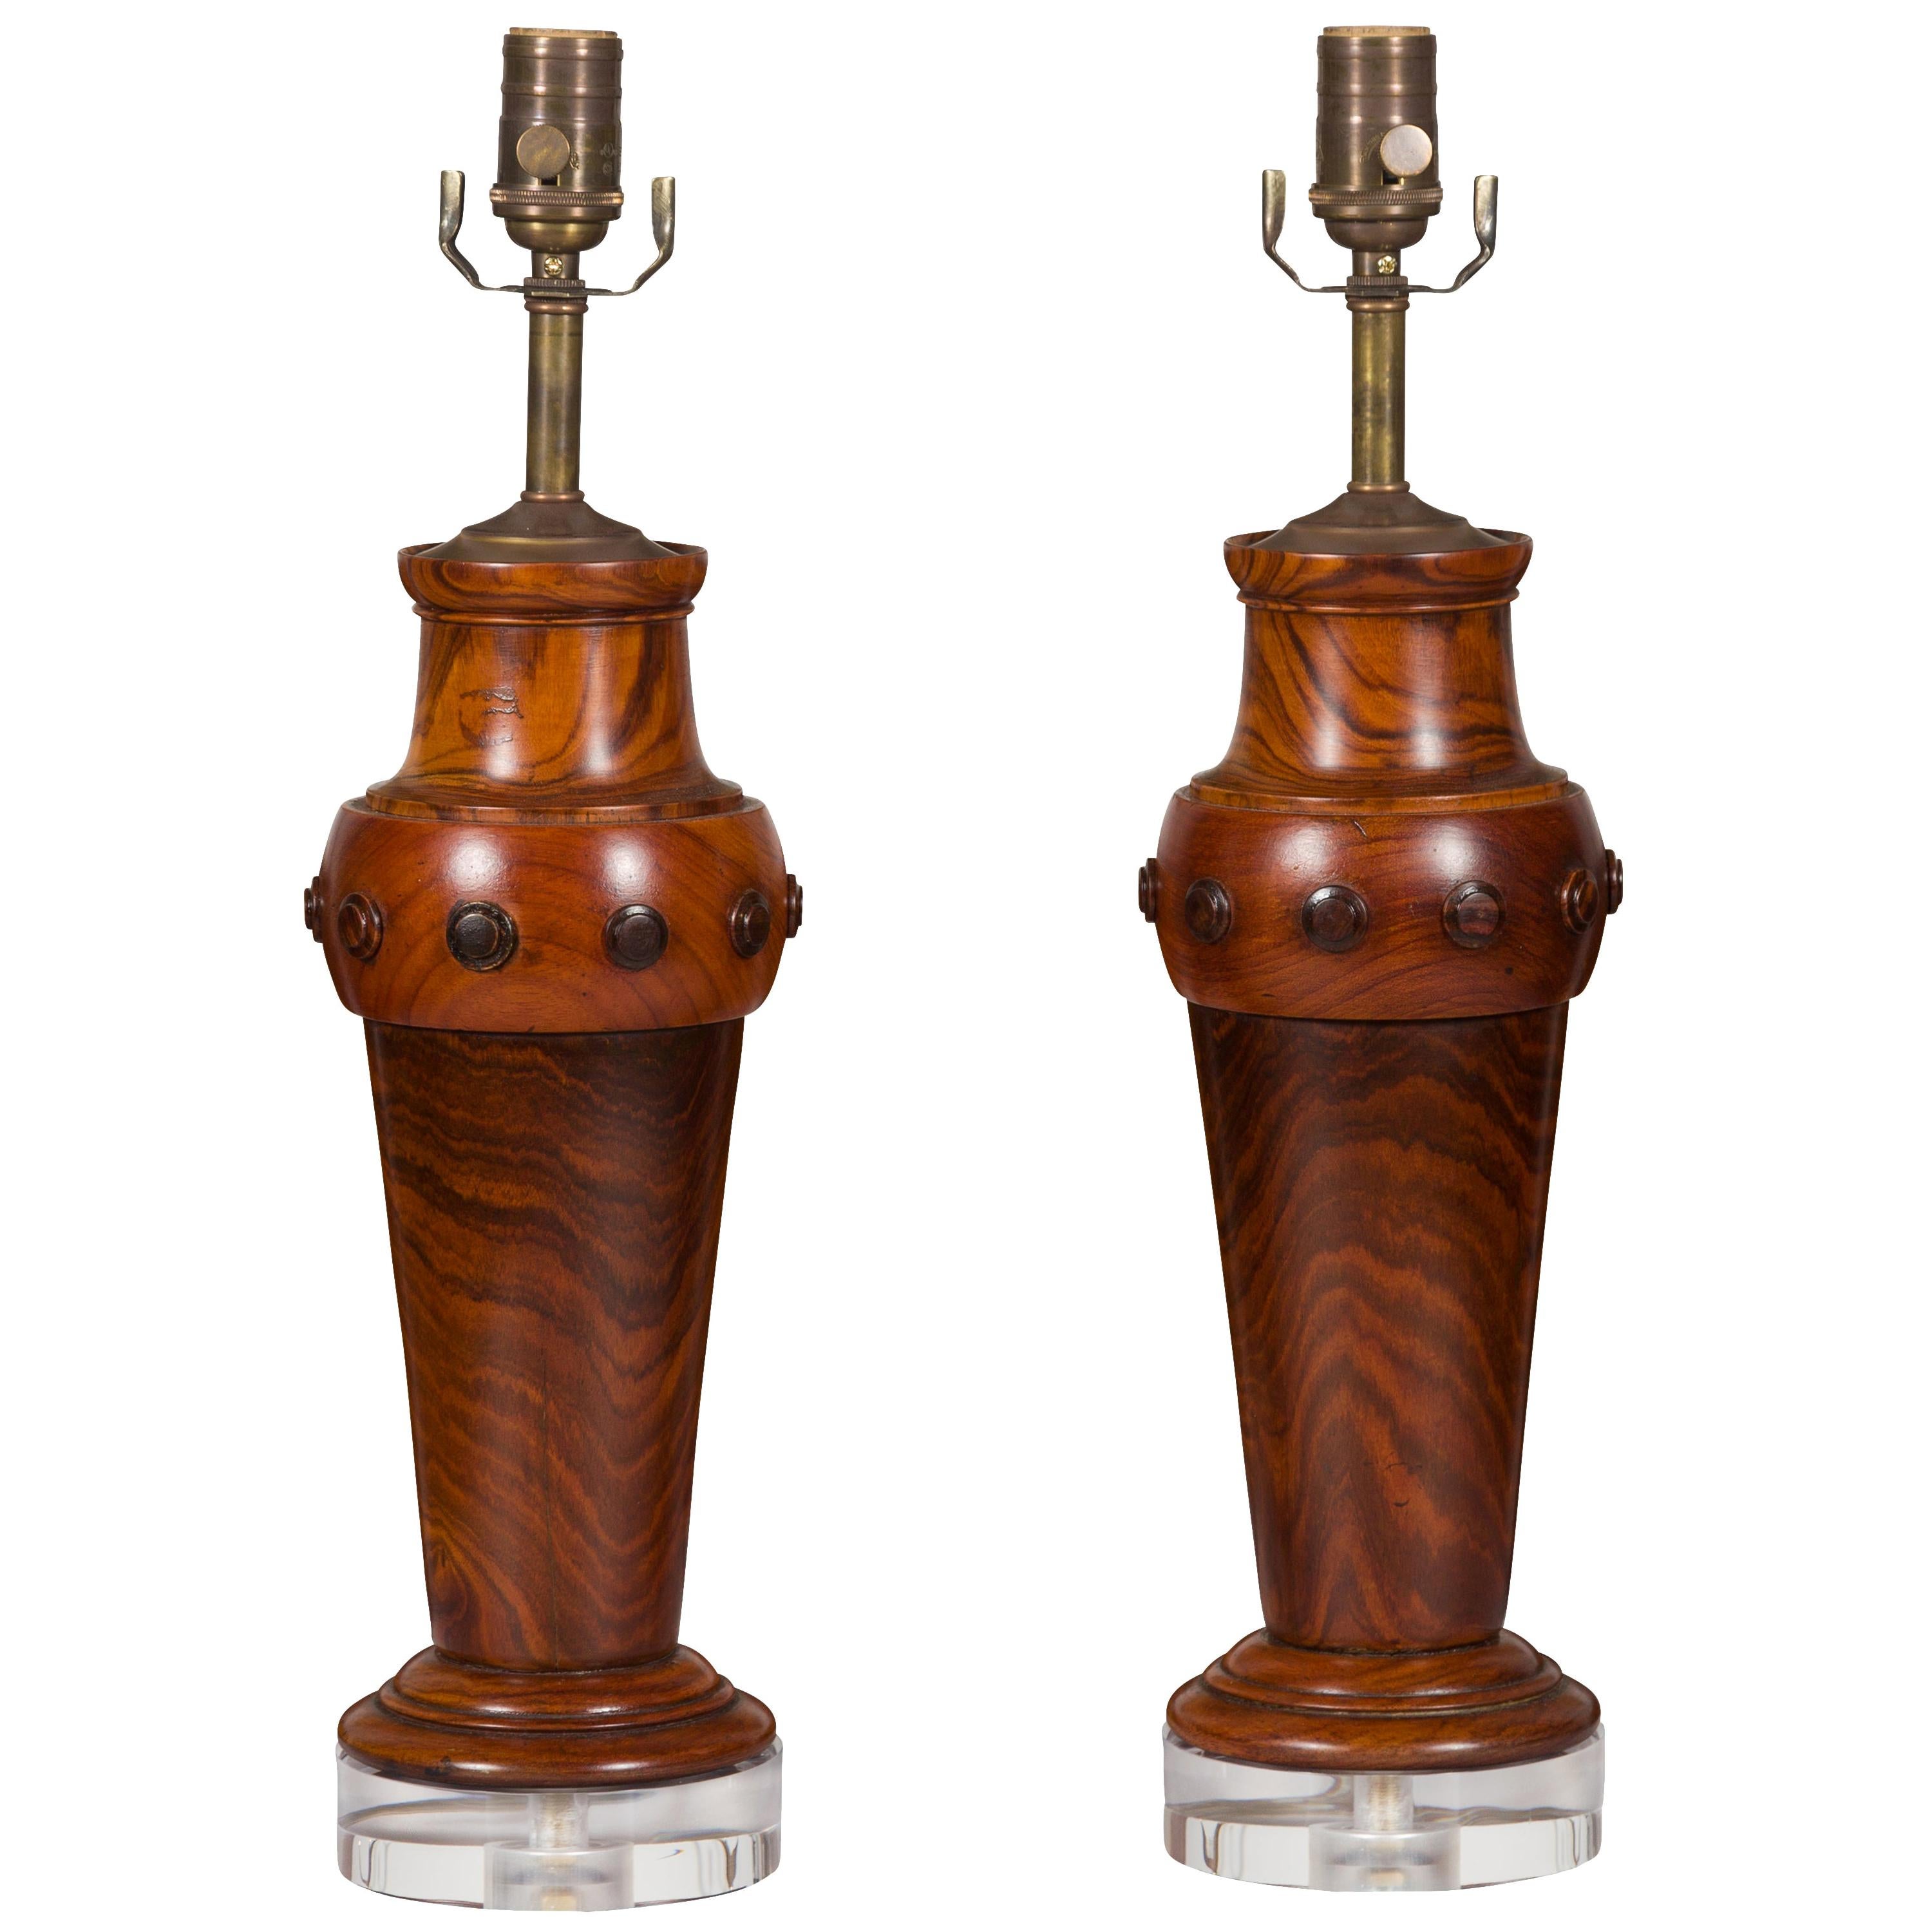 Paire de lampes de bureau françaises en bois tourné du milieu du siècle dernier, montées sur des socles en lucite